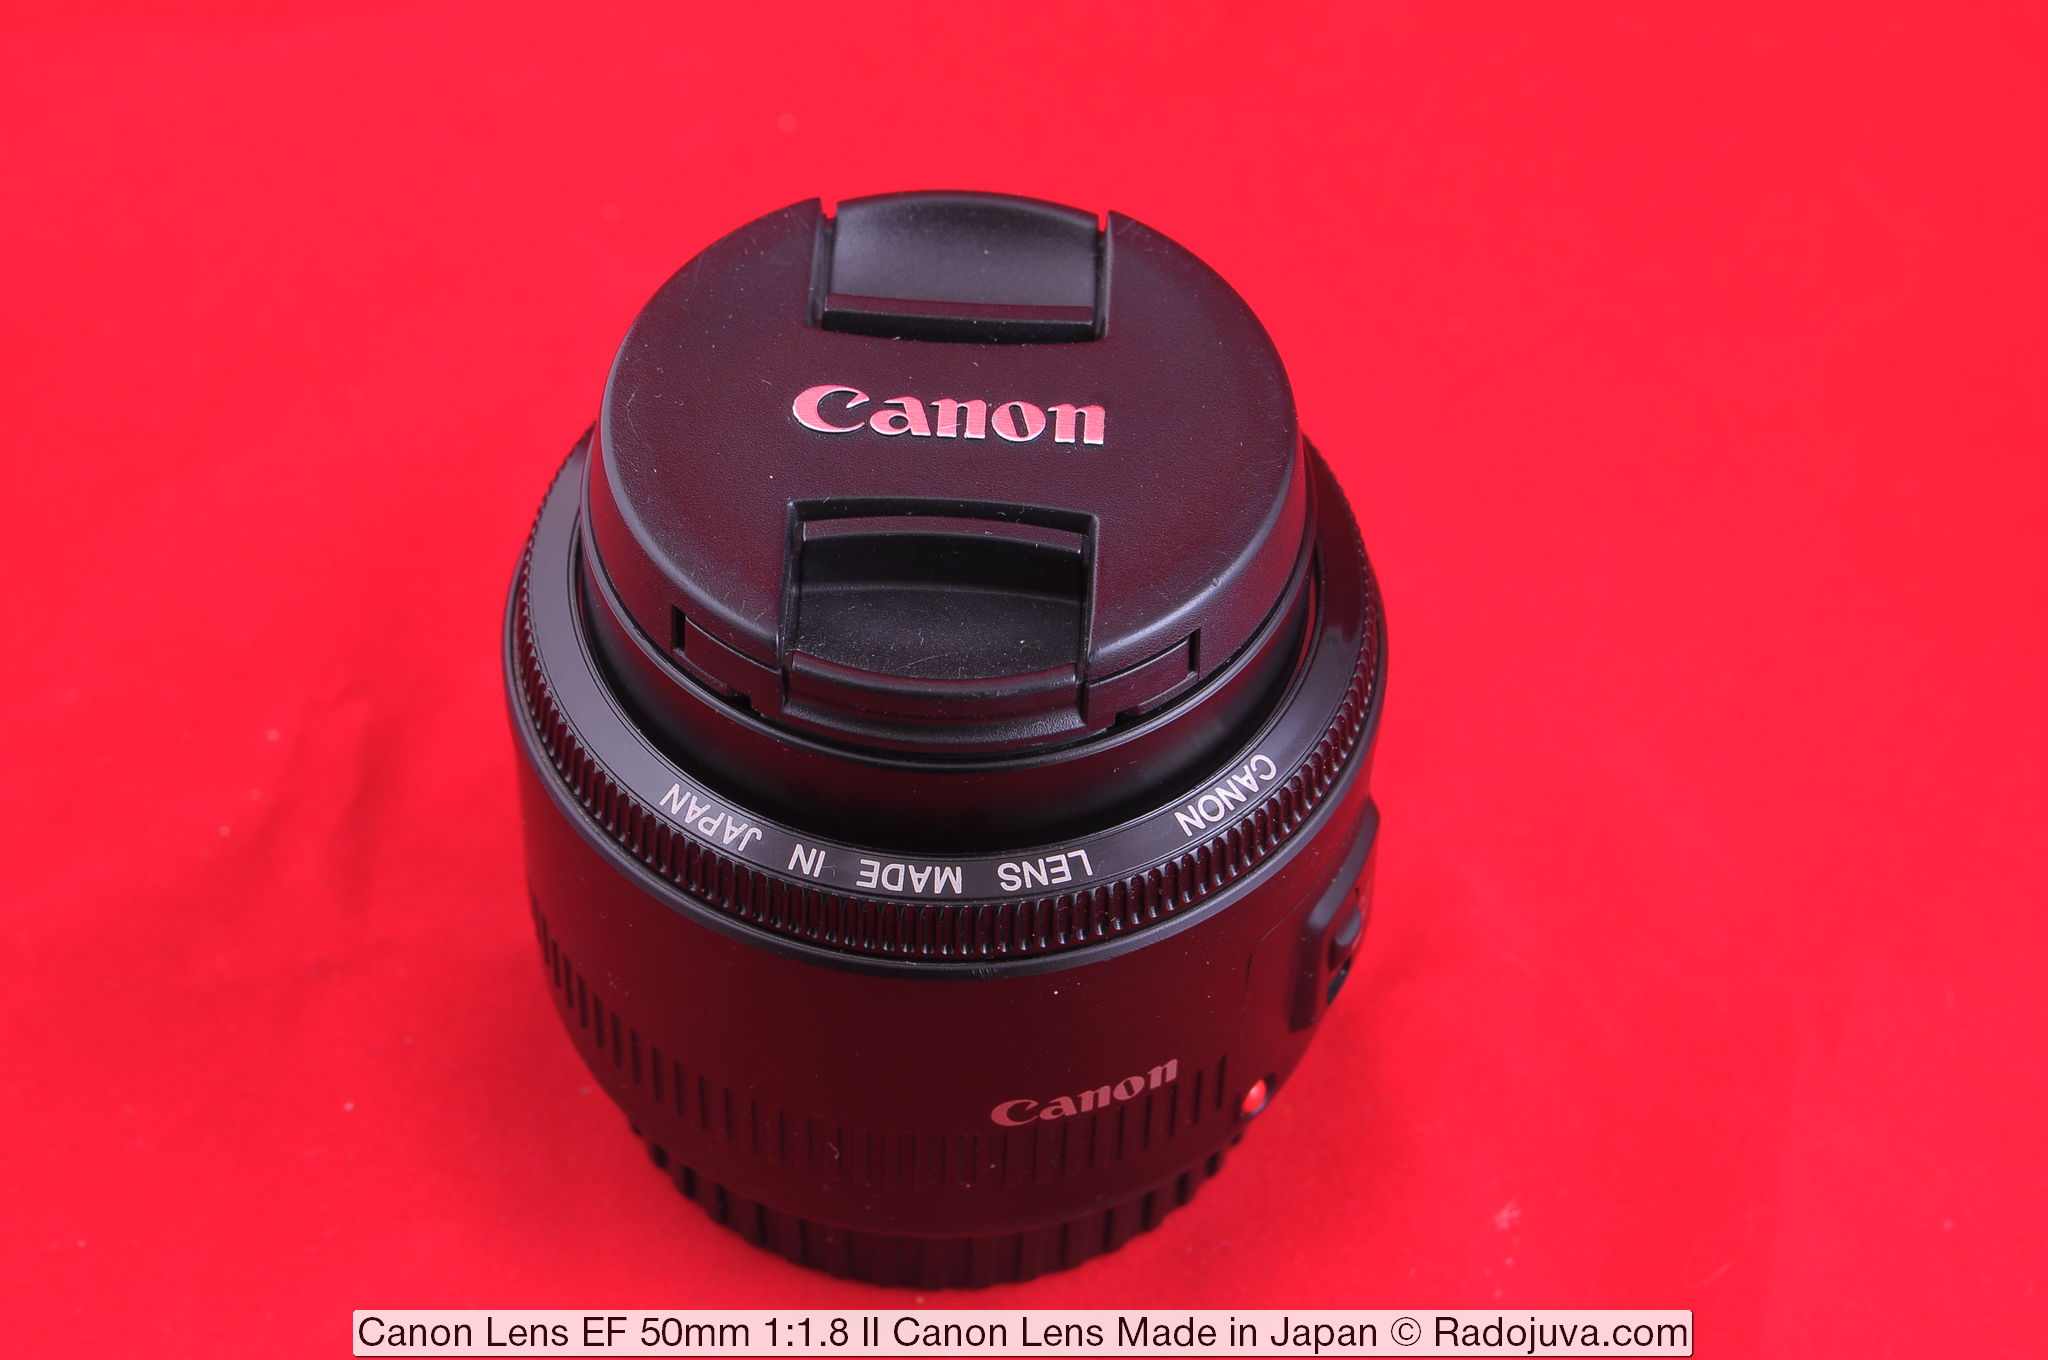 Canon EF 50mm f/1.8 STM Lens made in Japan superb